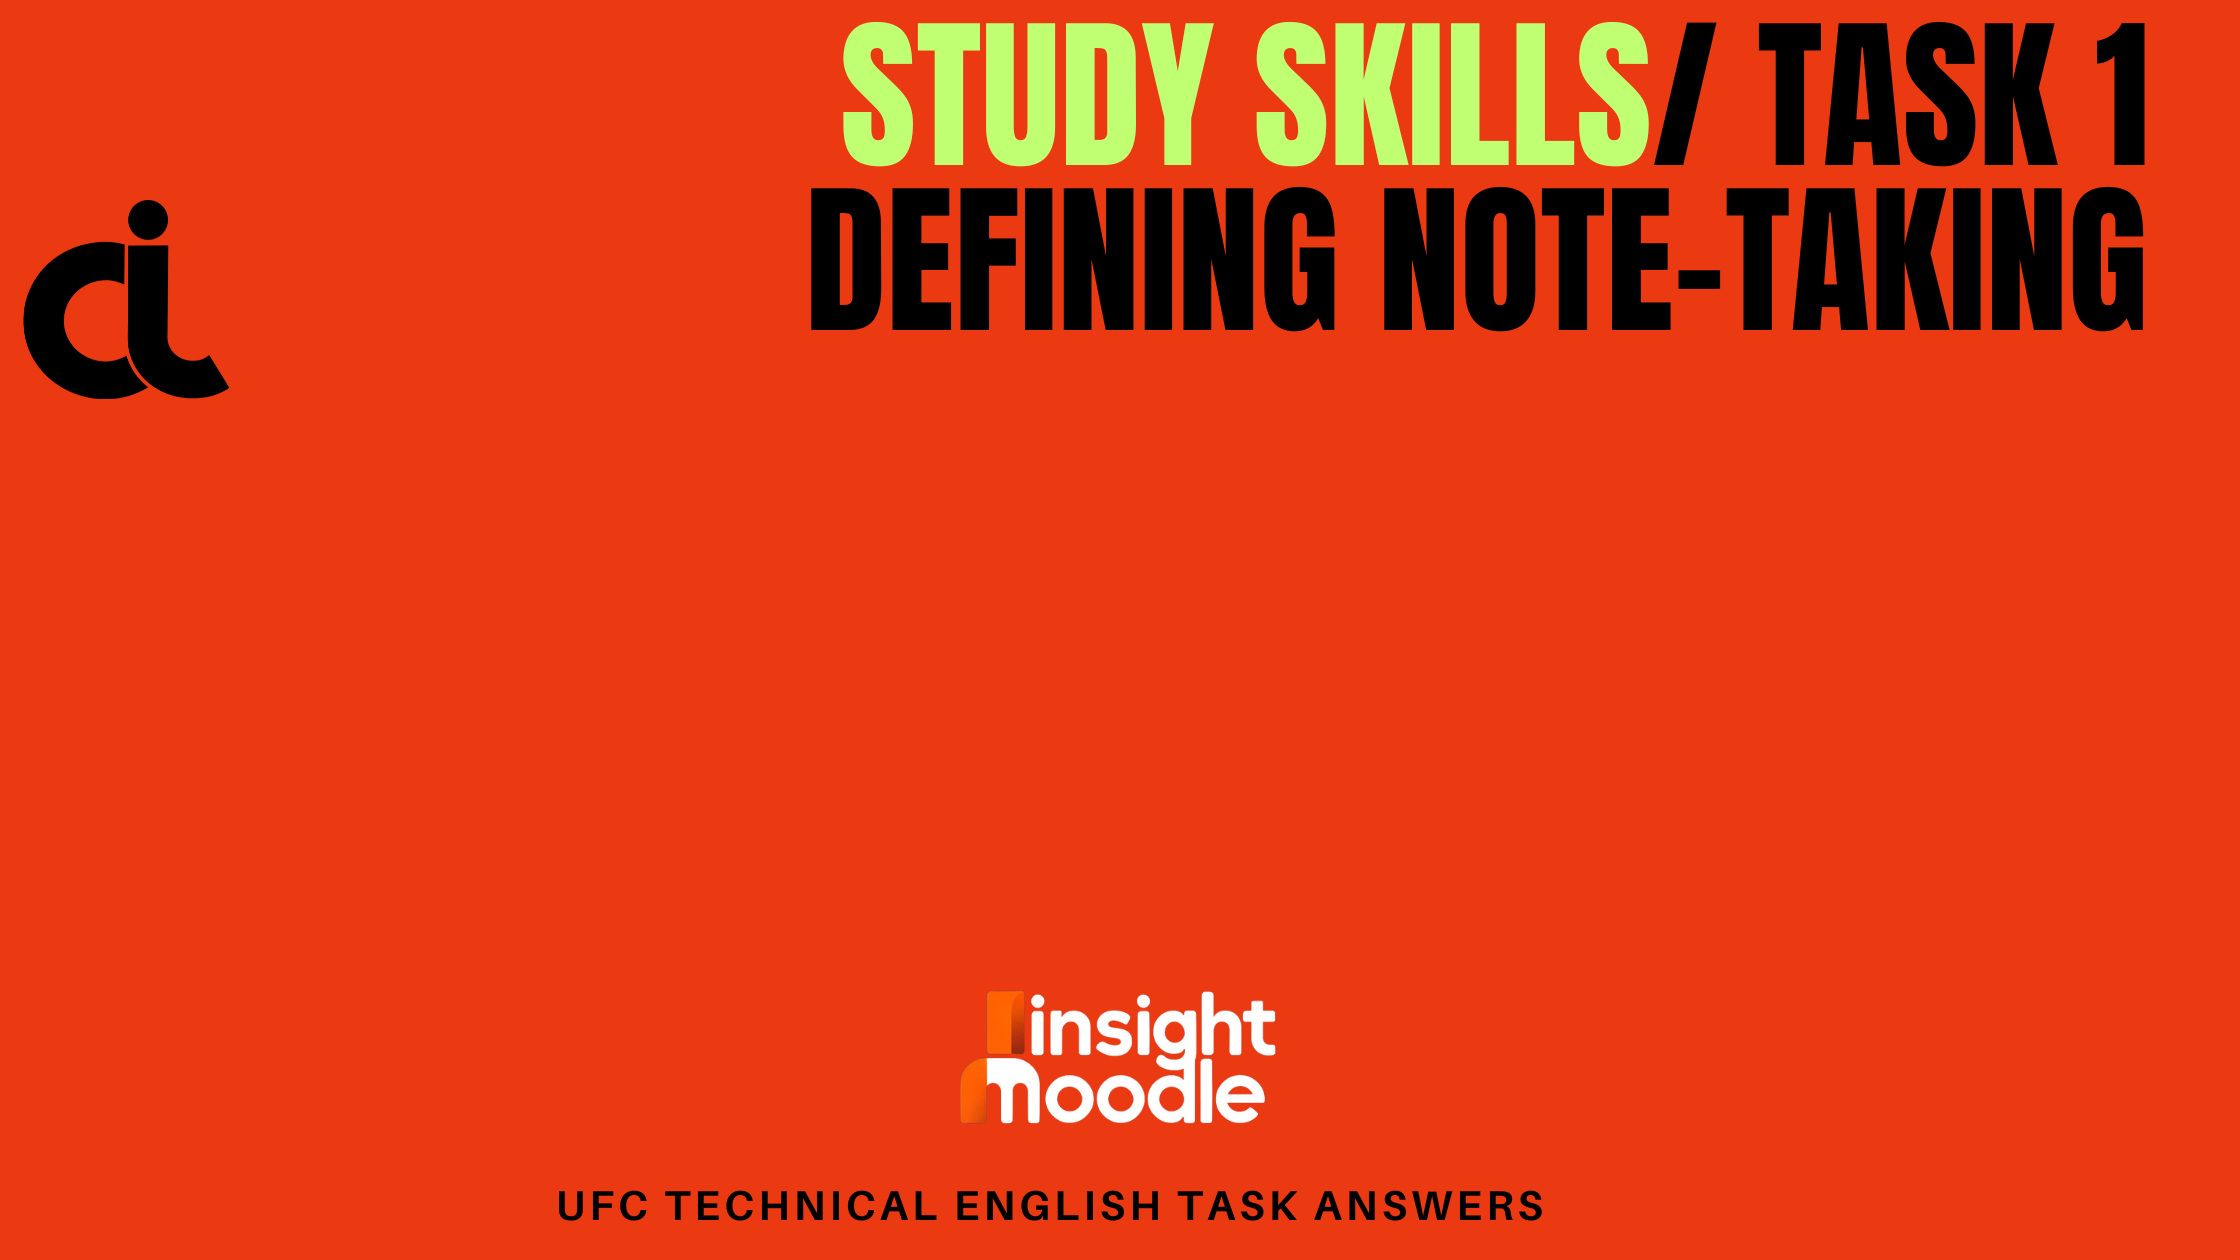 Study Skills/ Task 2 defining-taking